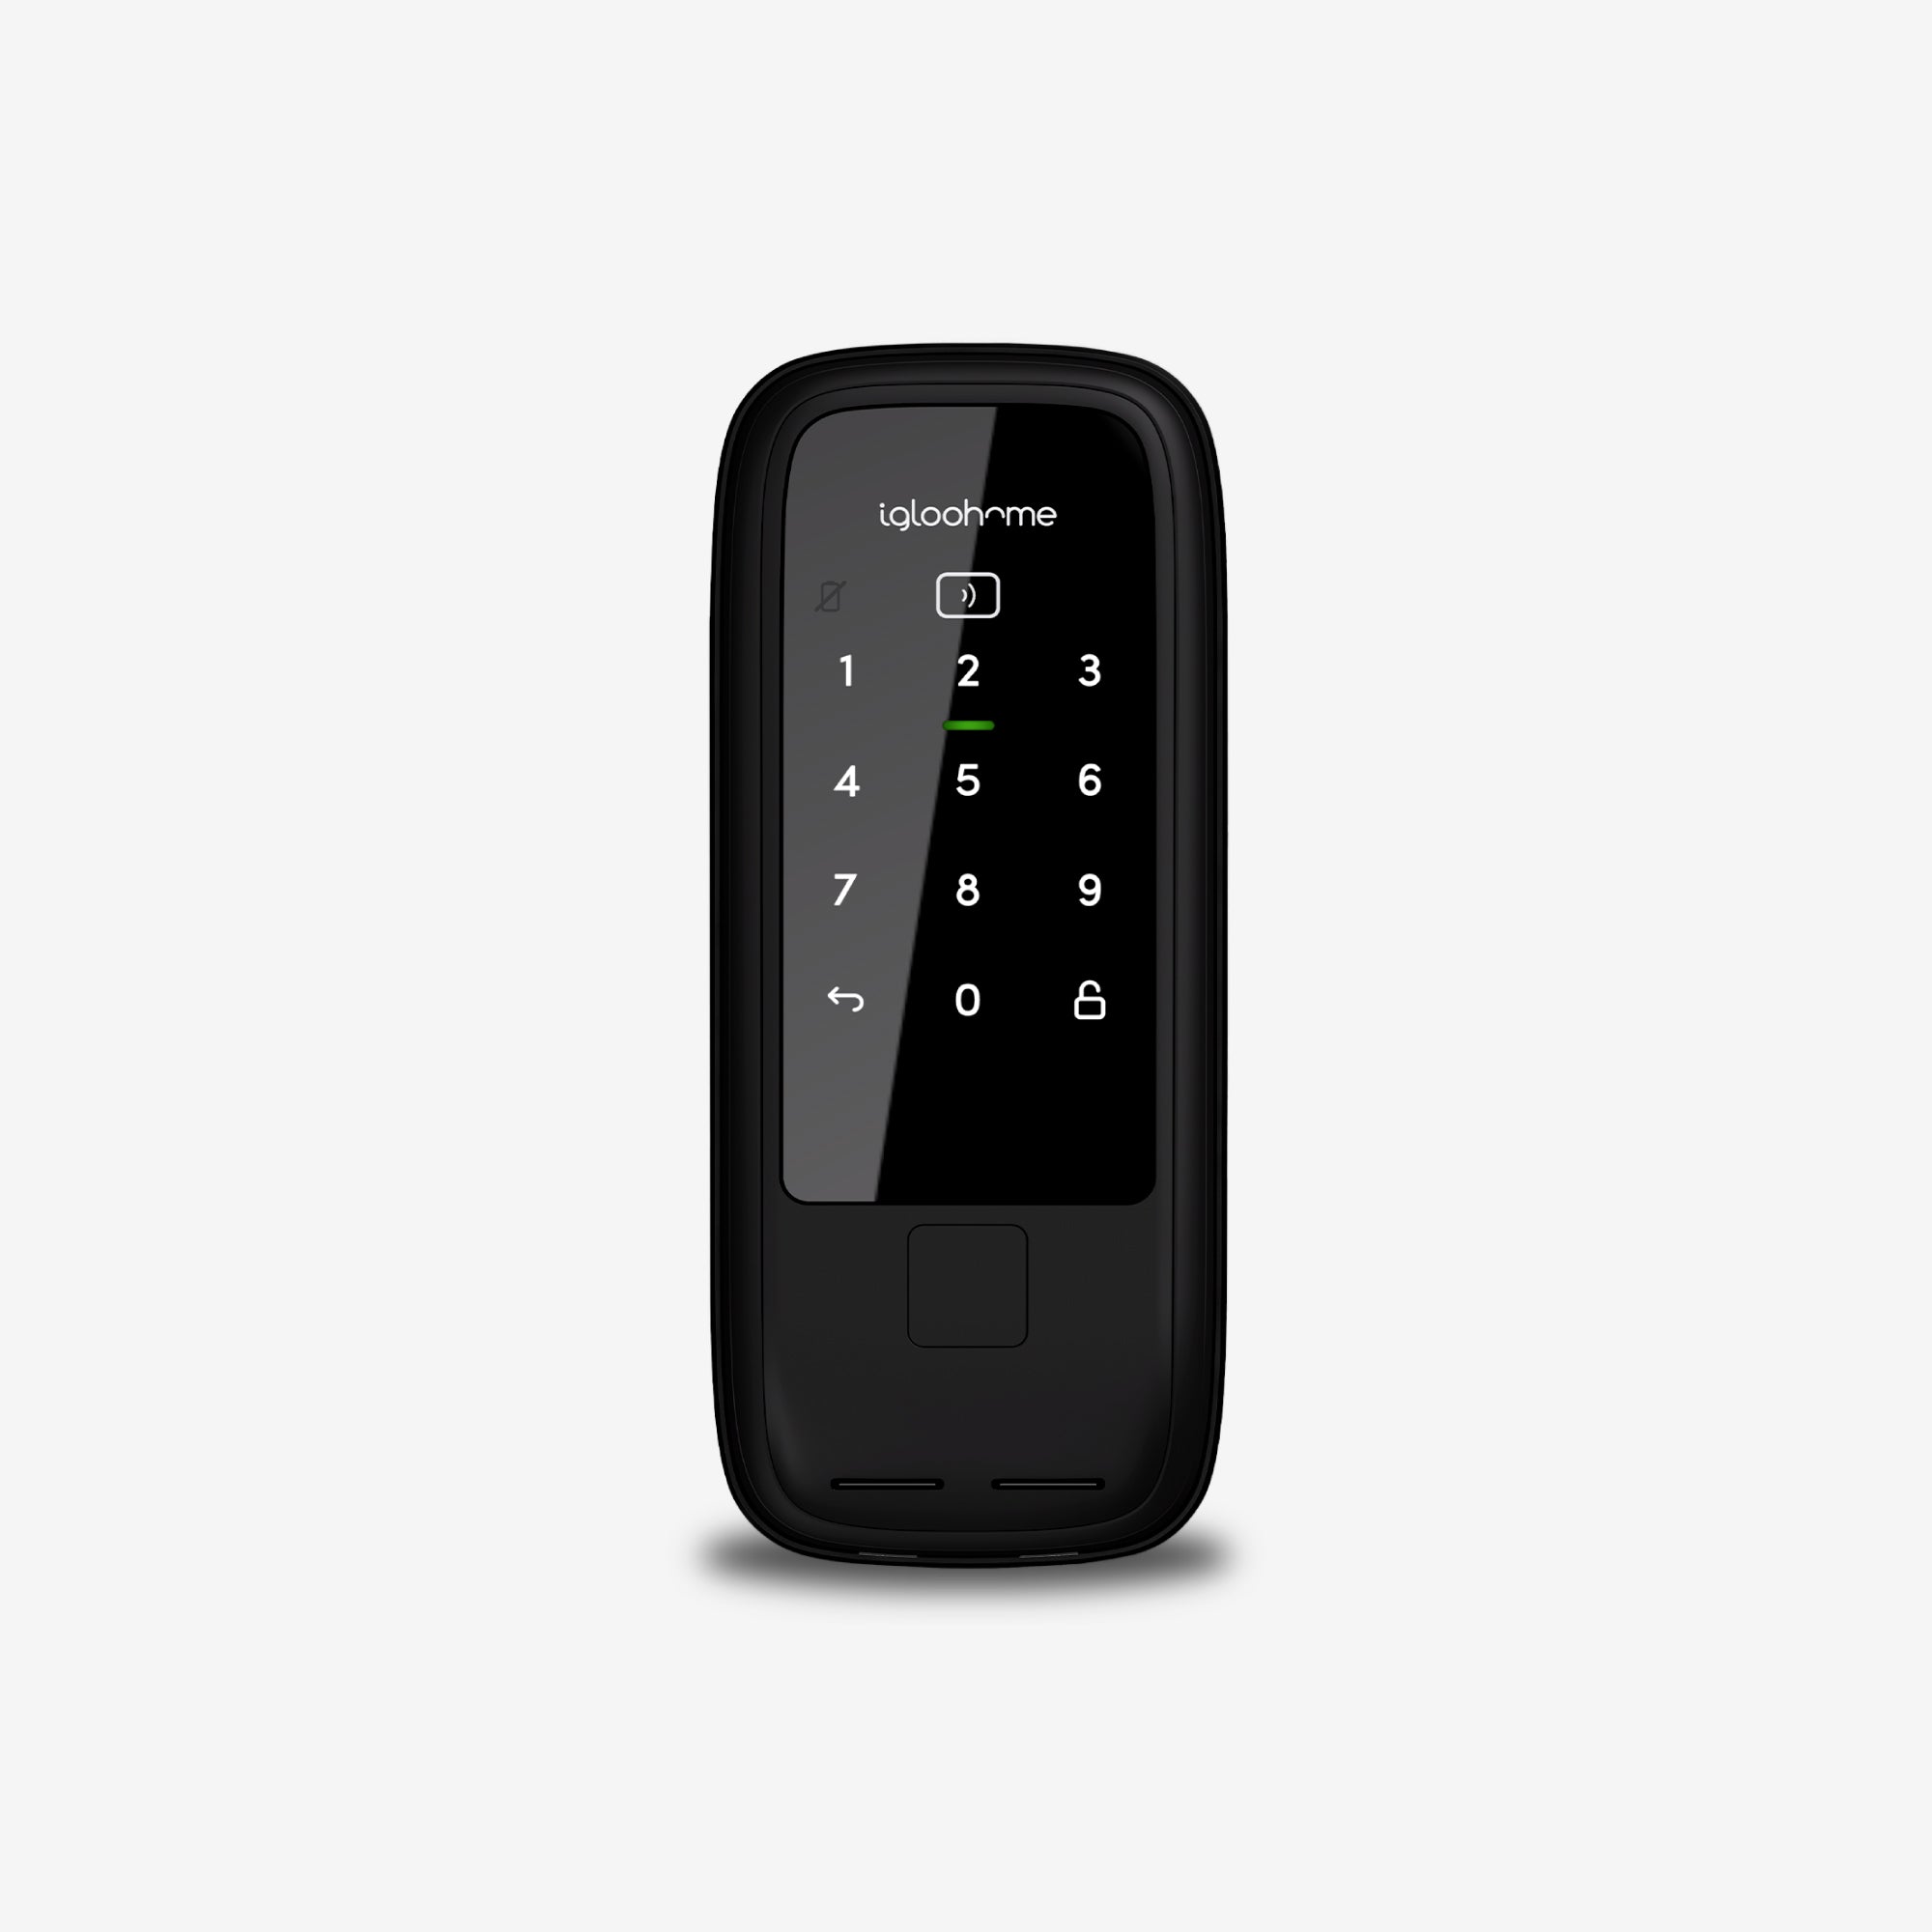 Rim Lock Wooden Doors. Cerradura con contraseña, Tarjeta, RFID, WiFi y Bluetooth vía app. Módulo exterior, vista frontal.